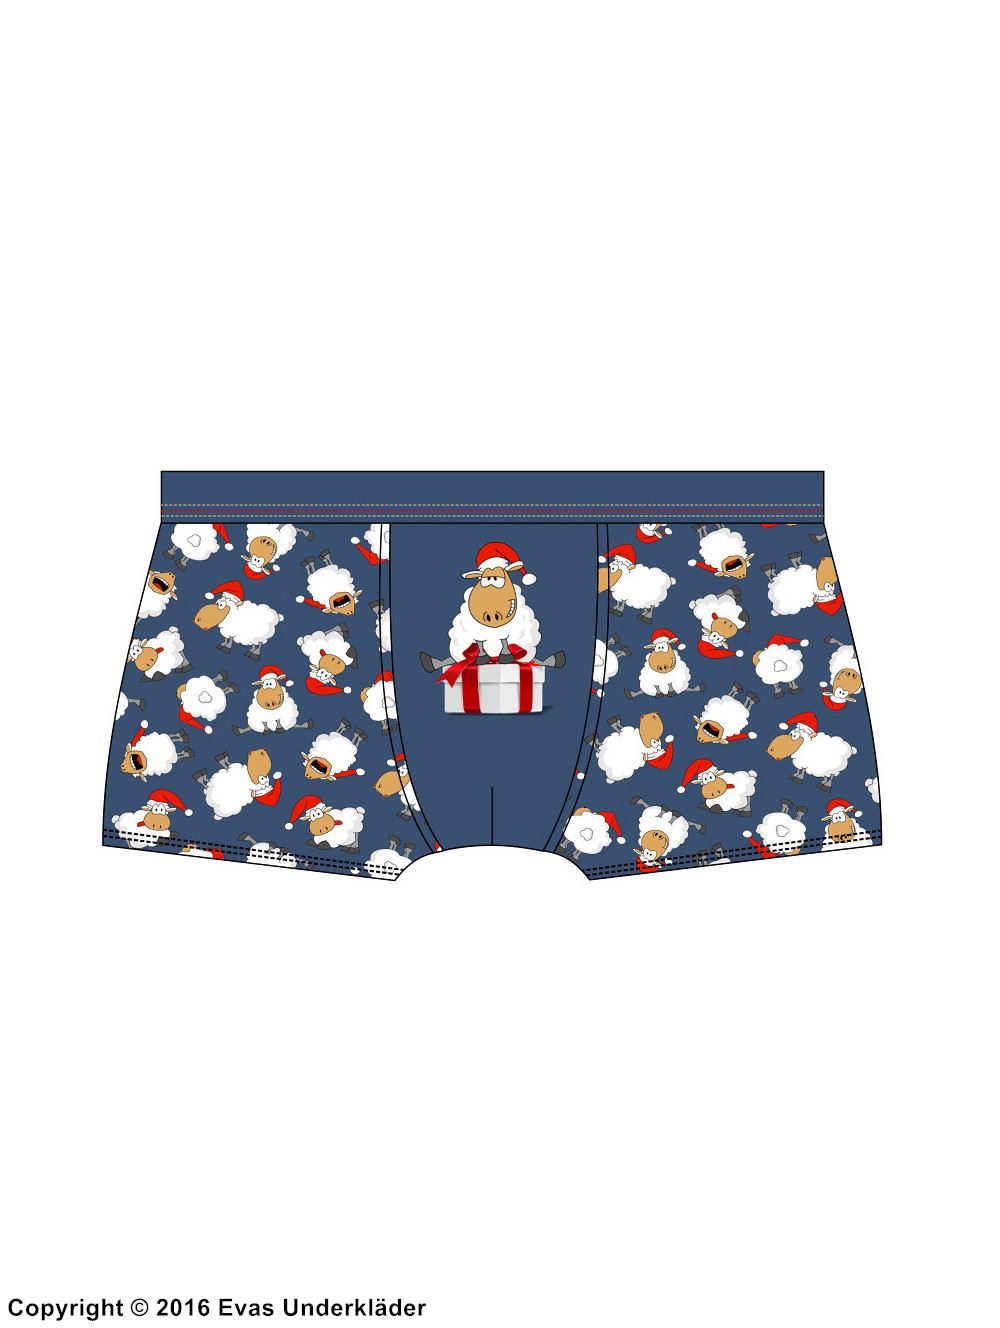 Men's boxer briefs, sheep, Christmas theme